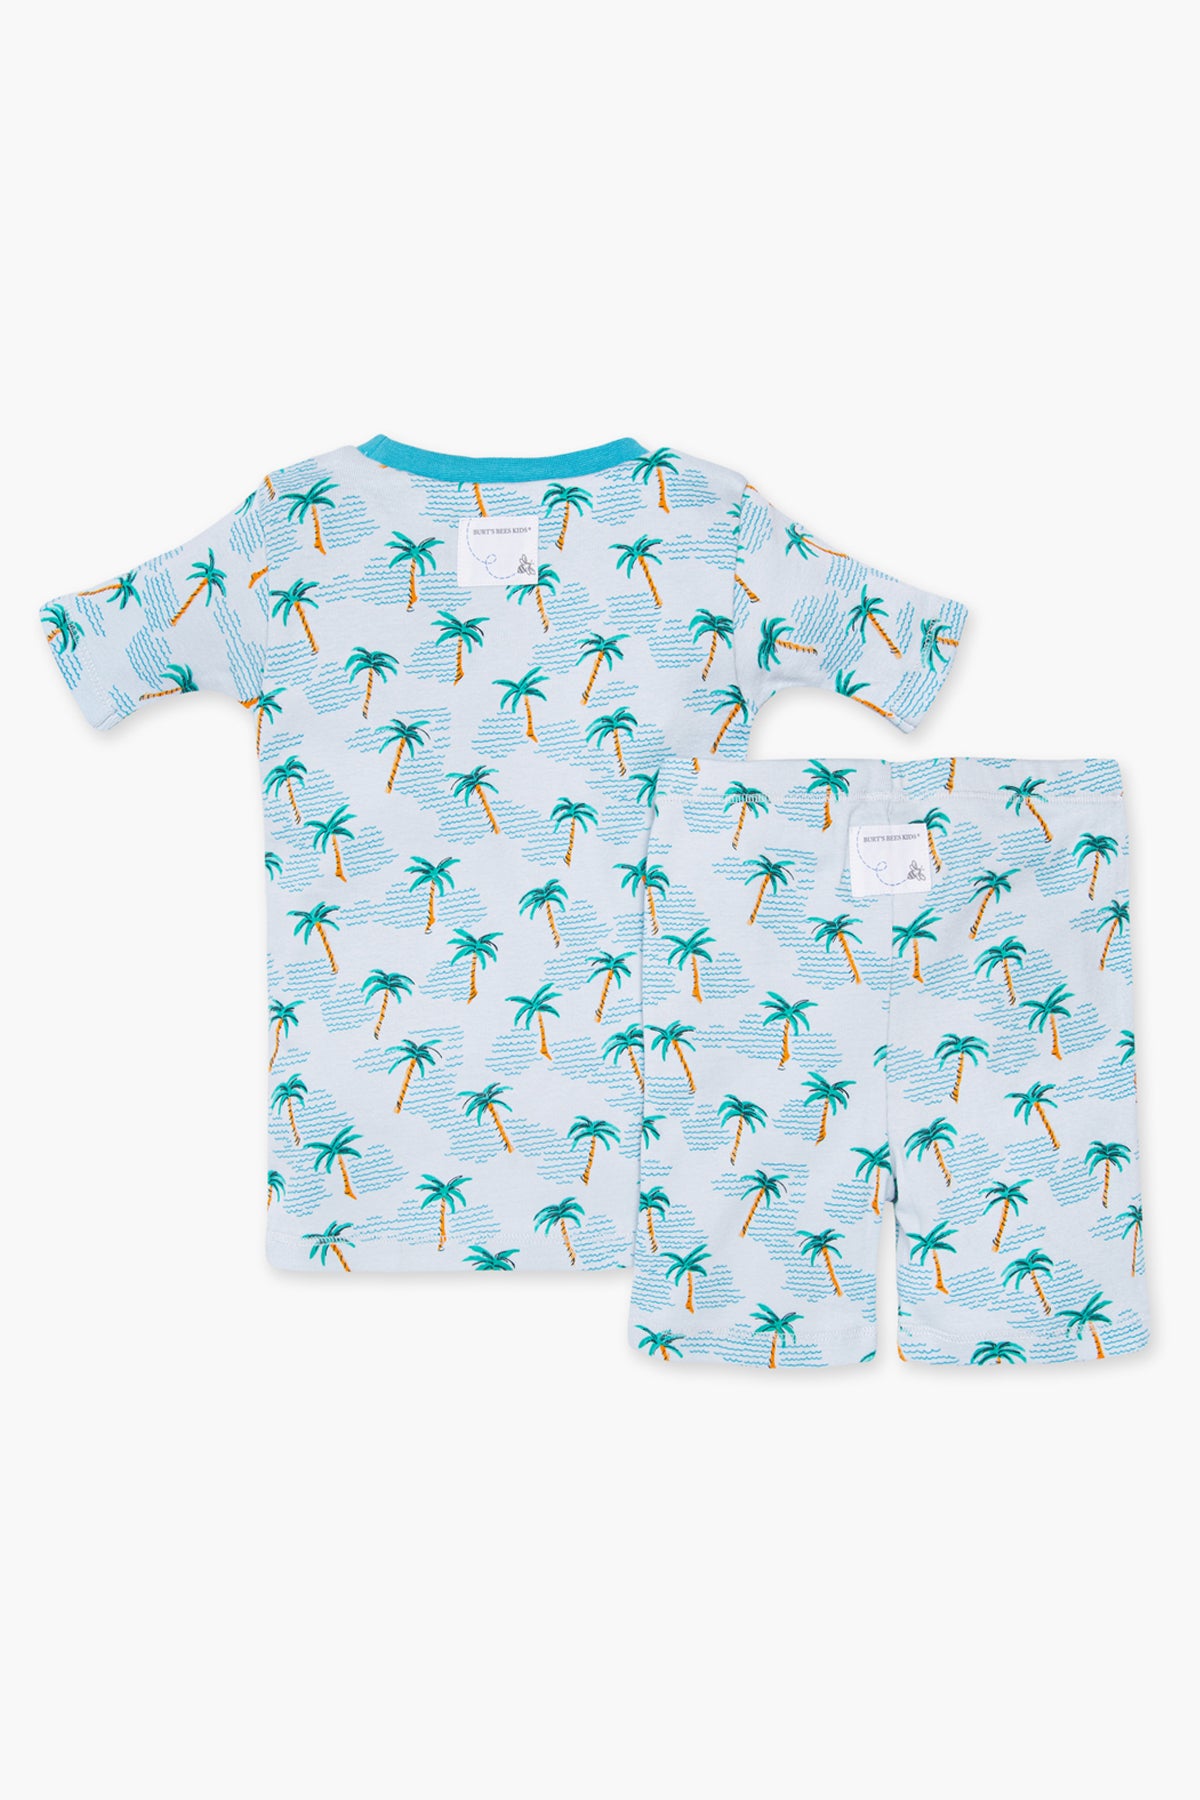 Burt's Bees Palm Beach Boys Pajama Set – Mini Ruby